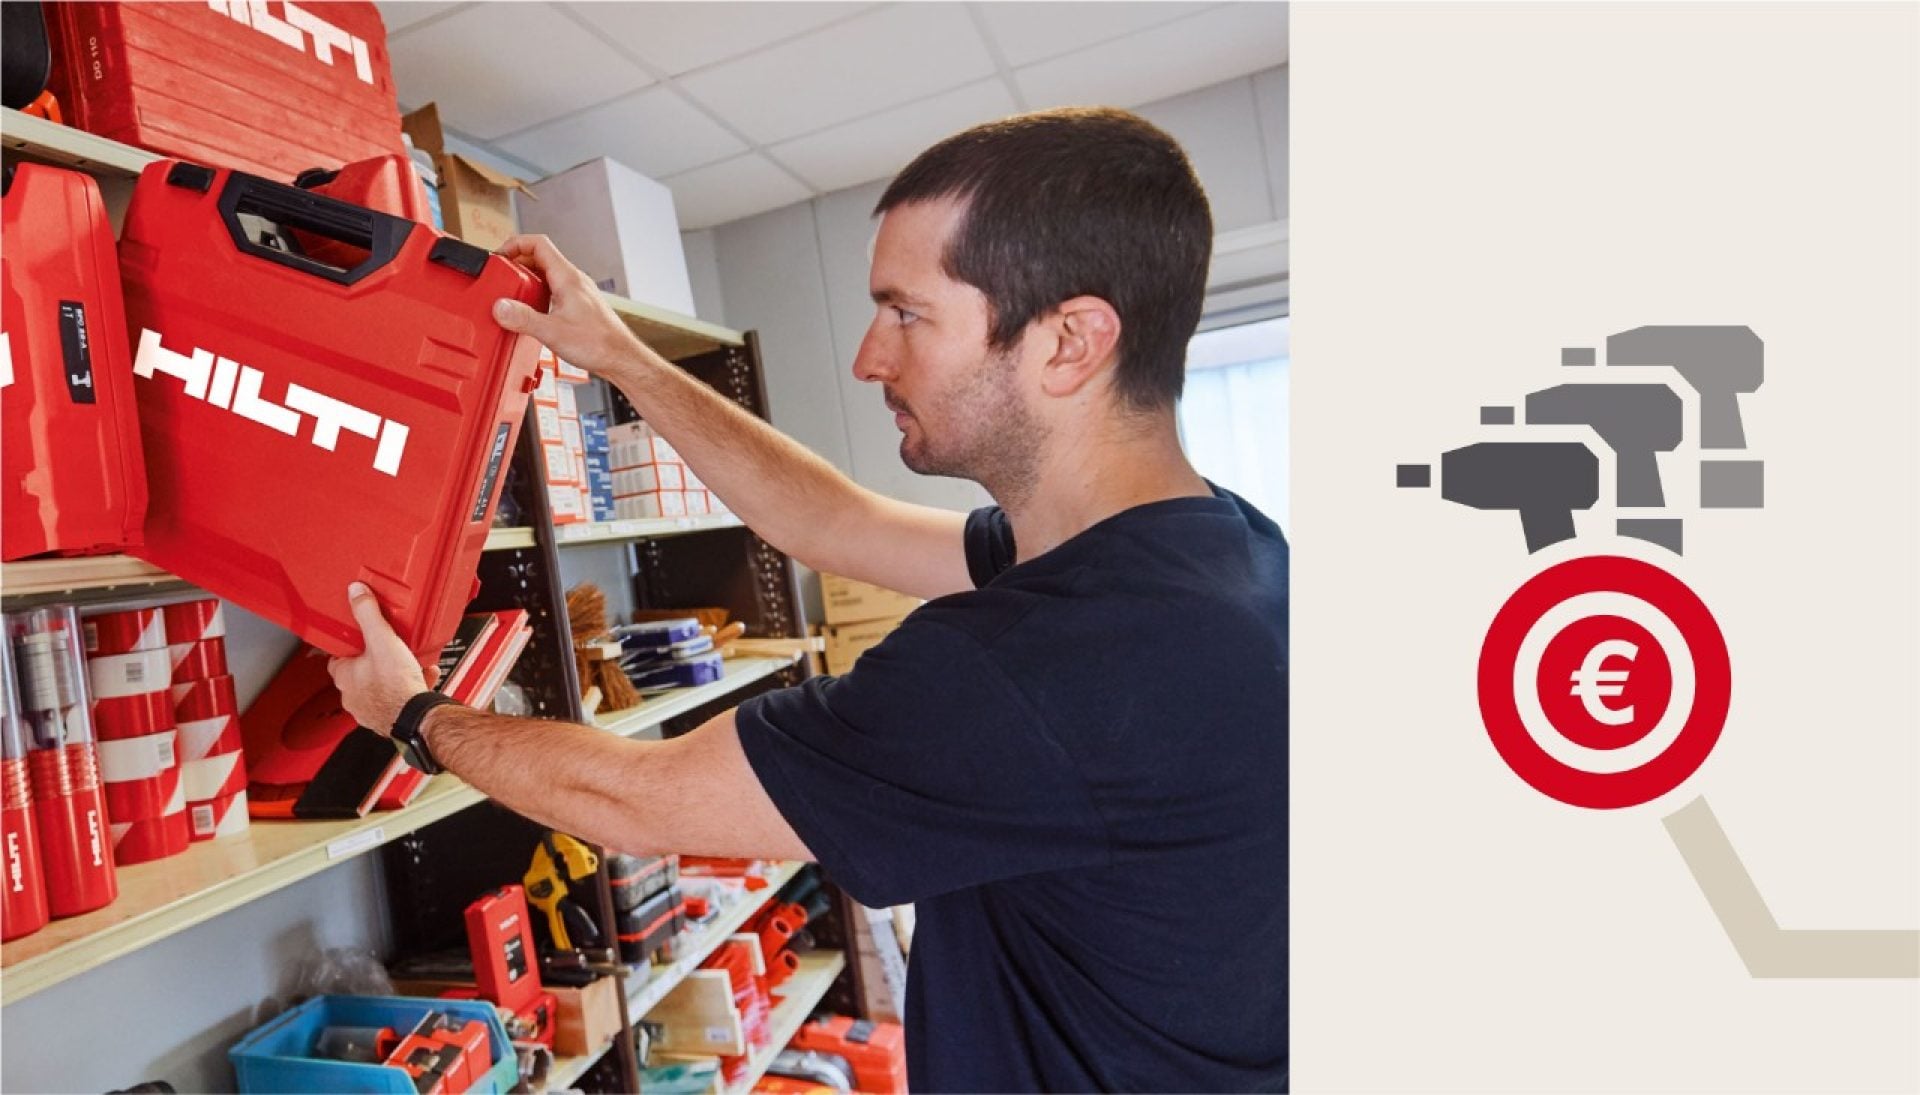 Ein männlicher Arbeiter nimmt einen roten Hilti Werkzeugkoffer aus einem Werkzeugregal. Rechts daneben ist eine Infografik mit drei grauen stilisierten Akkuschraubern und einem roten Eurozeichen zu sehen.